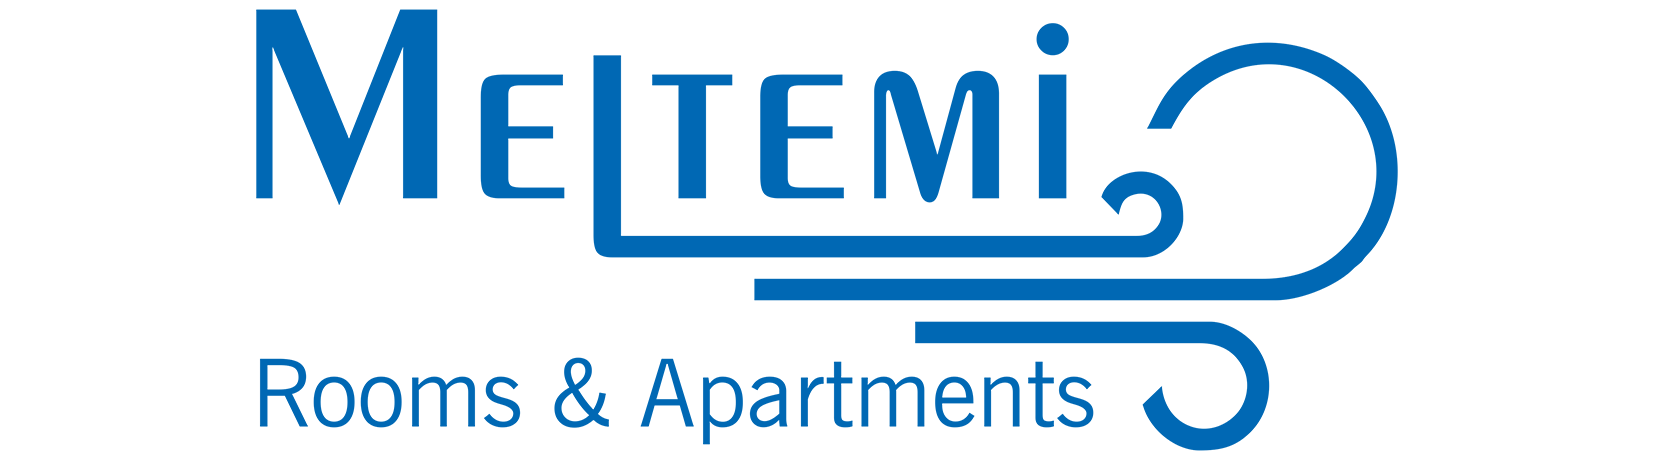 Λογότυπος των δωματίων και διαμερισμάτων Μελτέμι